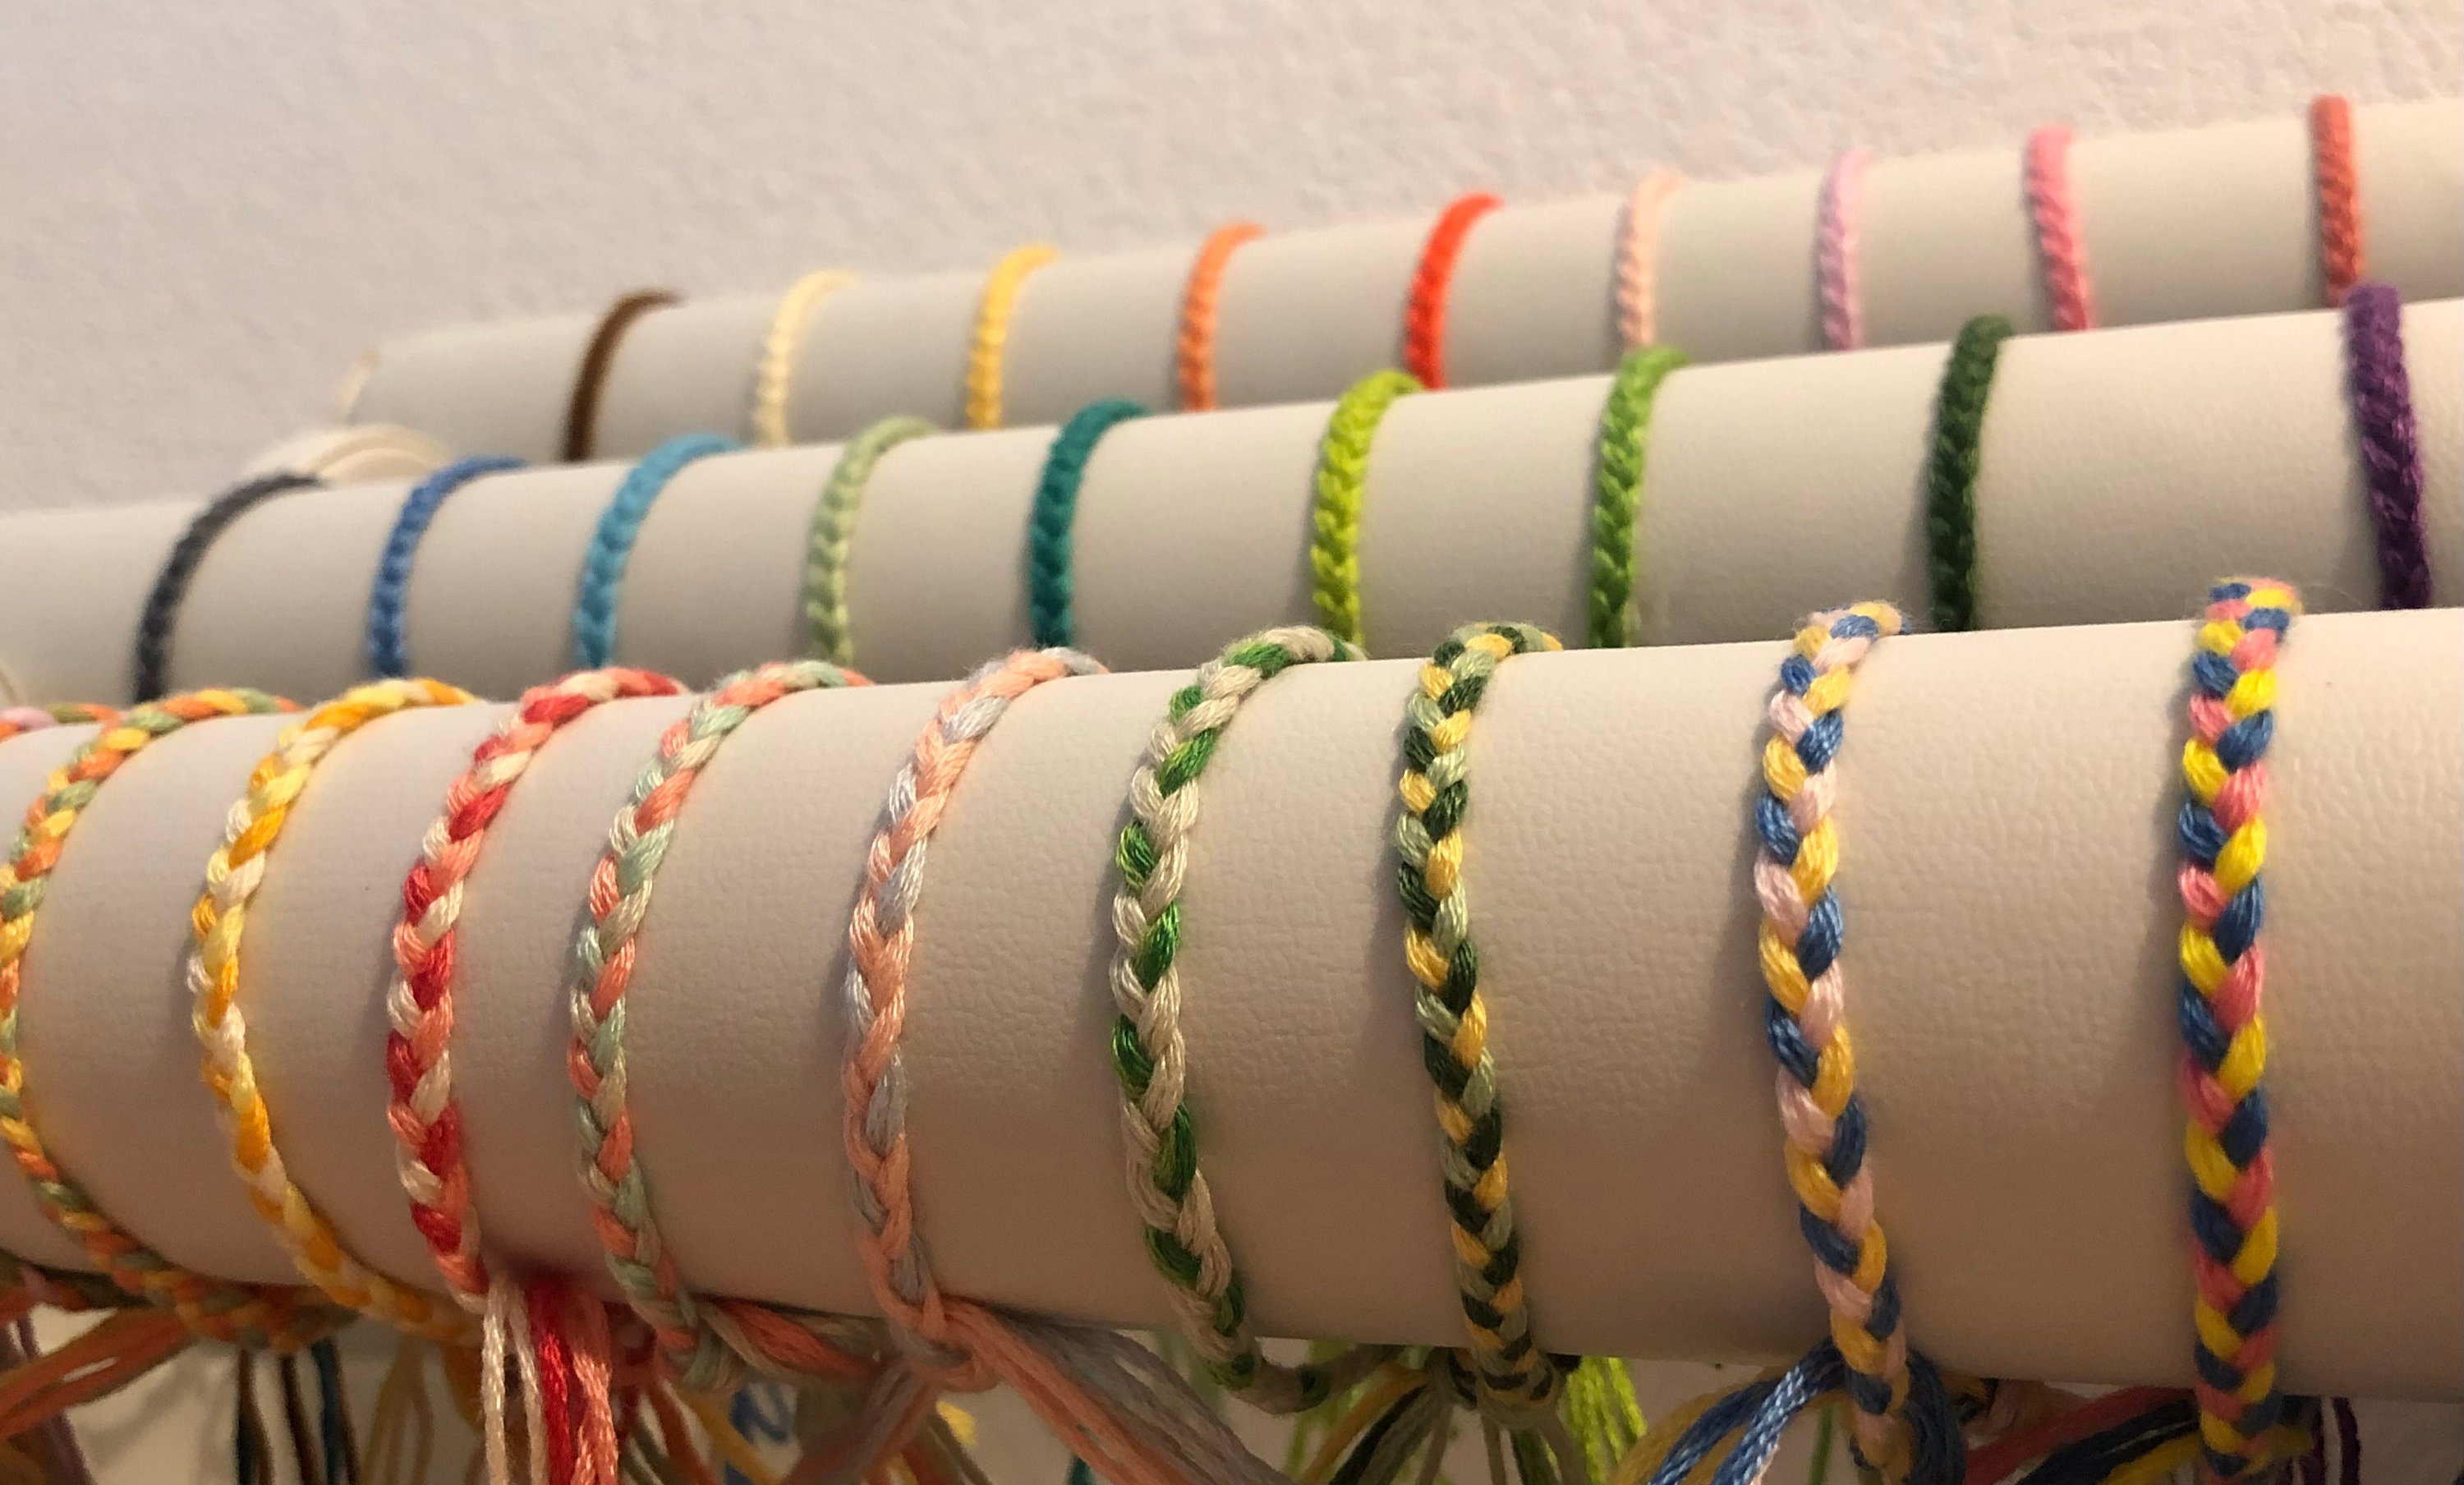 Sangle corde tressee multicolore 18mm en coton / Sangles en coton  bandoulières anses de sac, ceintures, cabas, besaces -  France